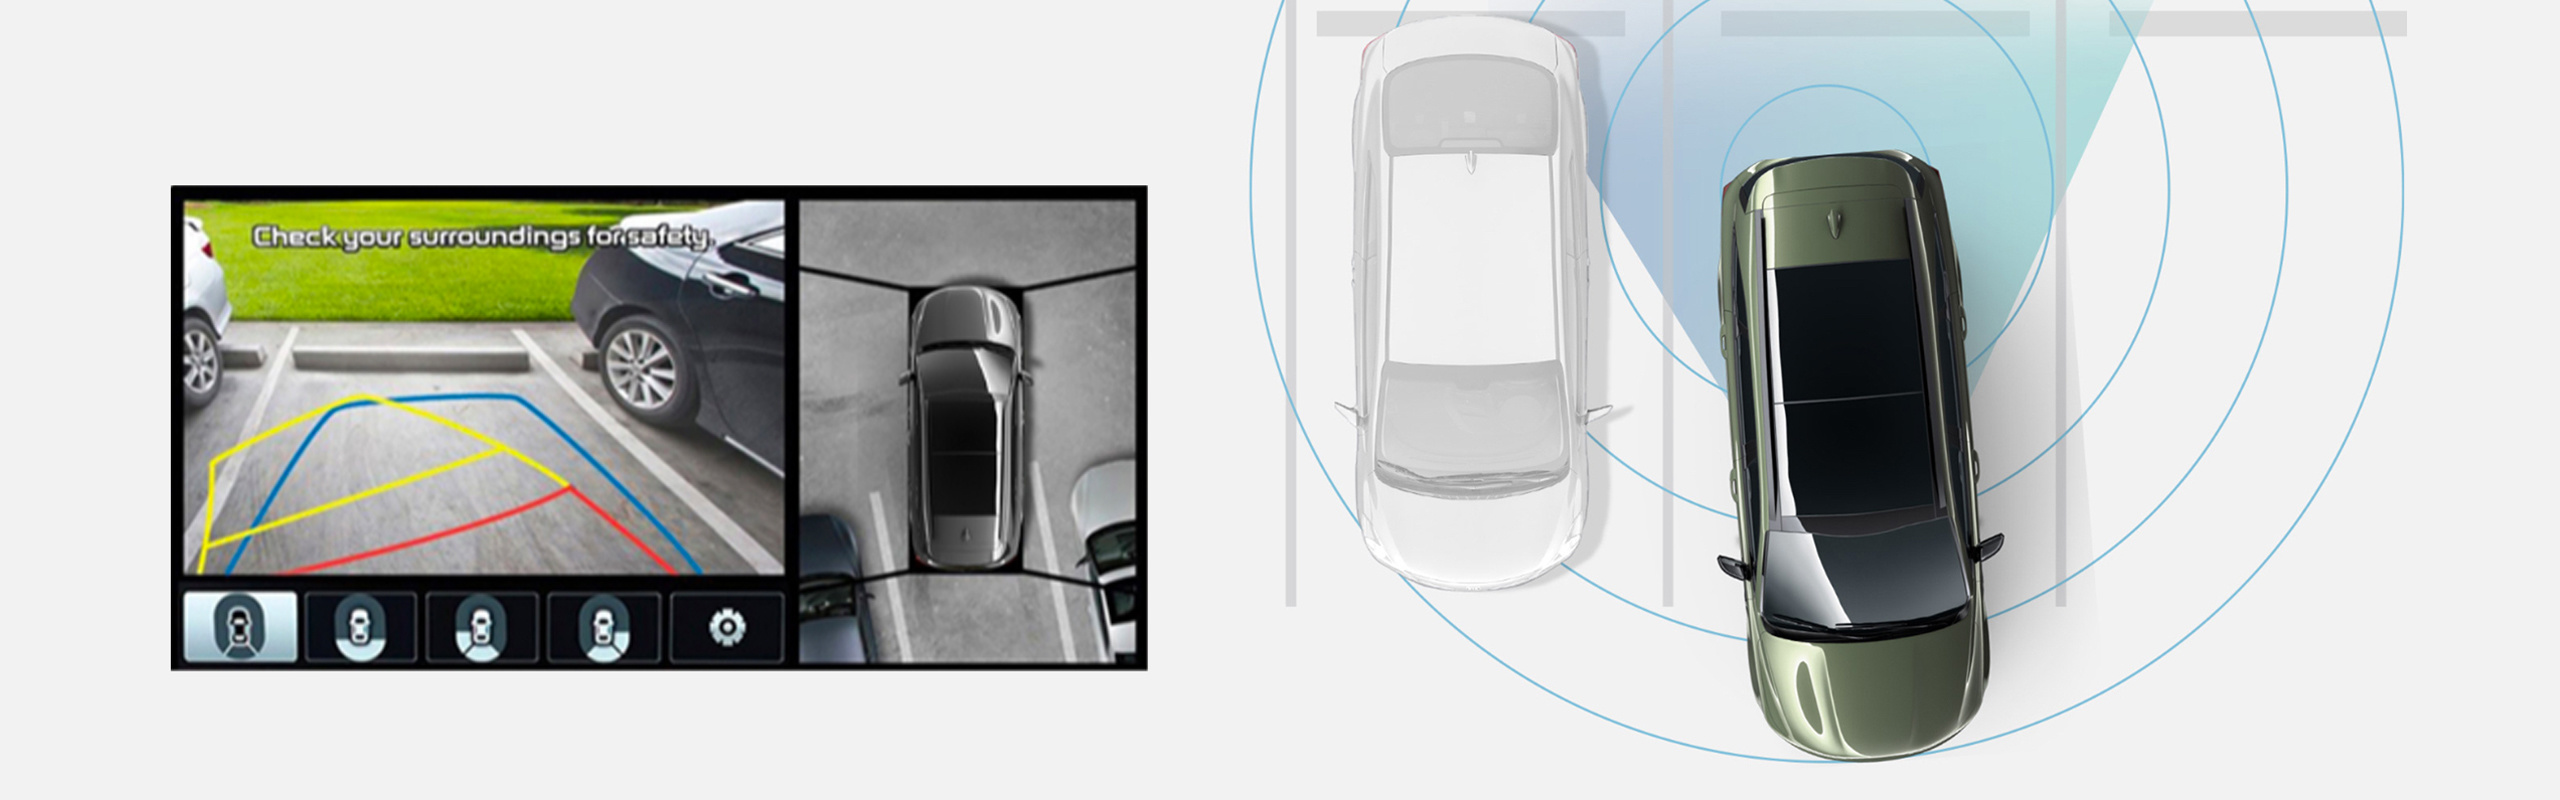 2023 Kia Sorento 360 Degree Surround View Monitor